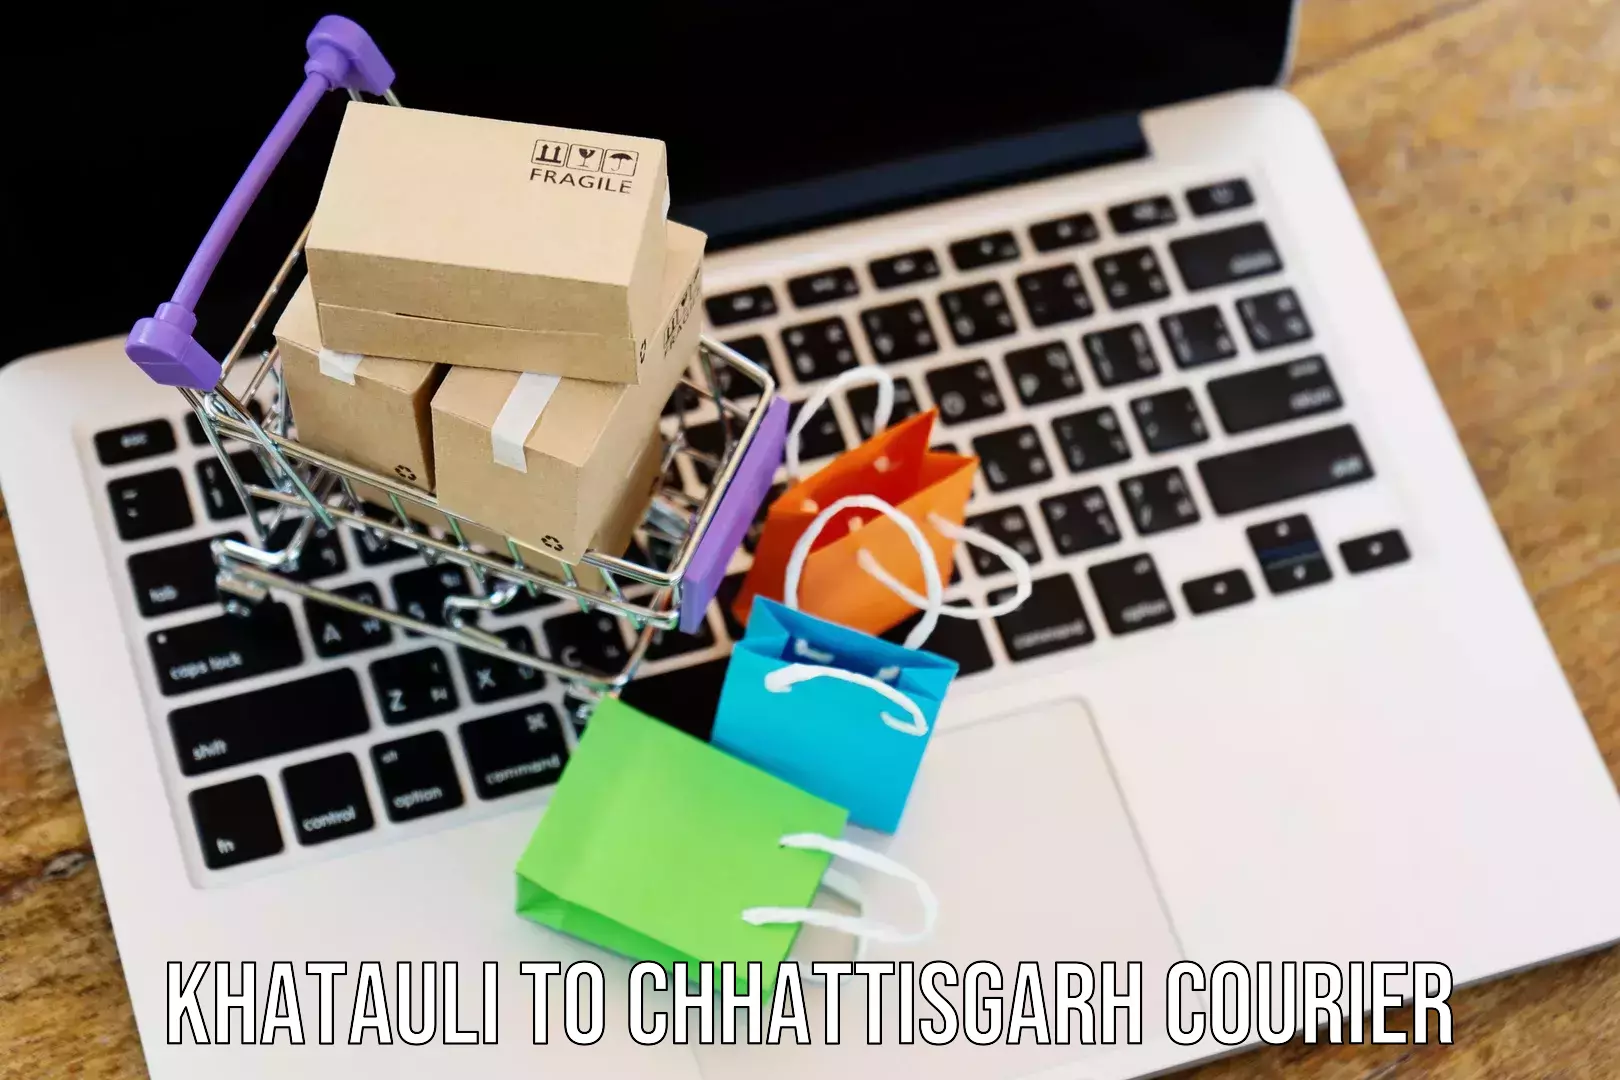 Customer-focused courier Khatauli to Raigarh Chhattisgarh